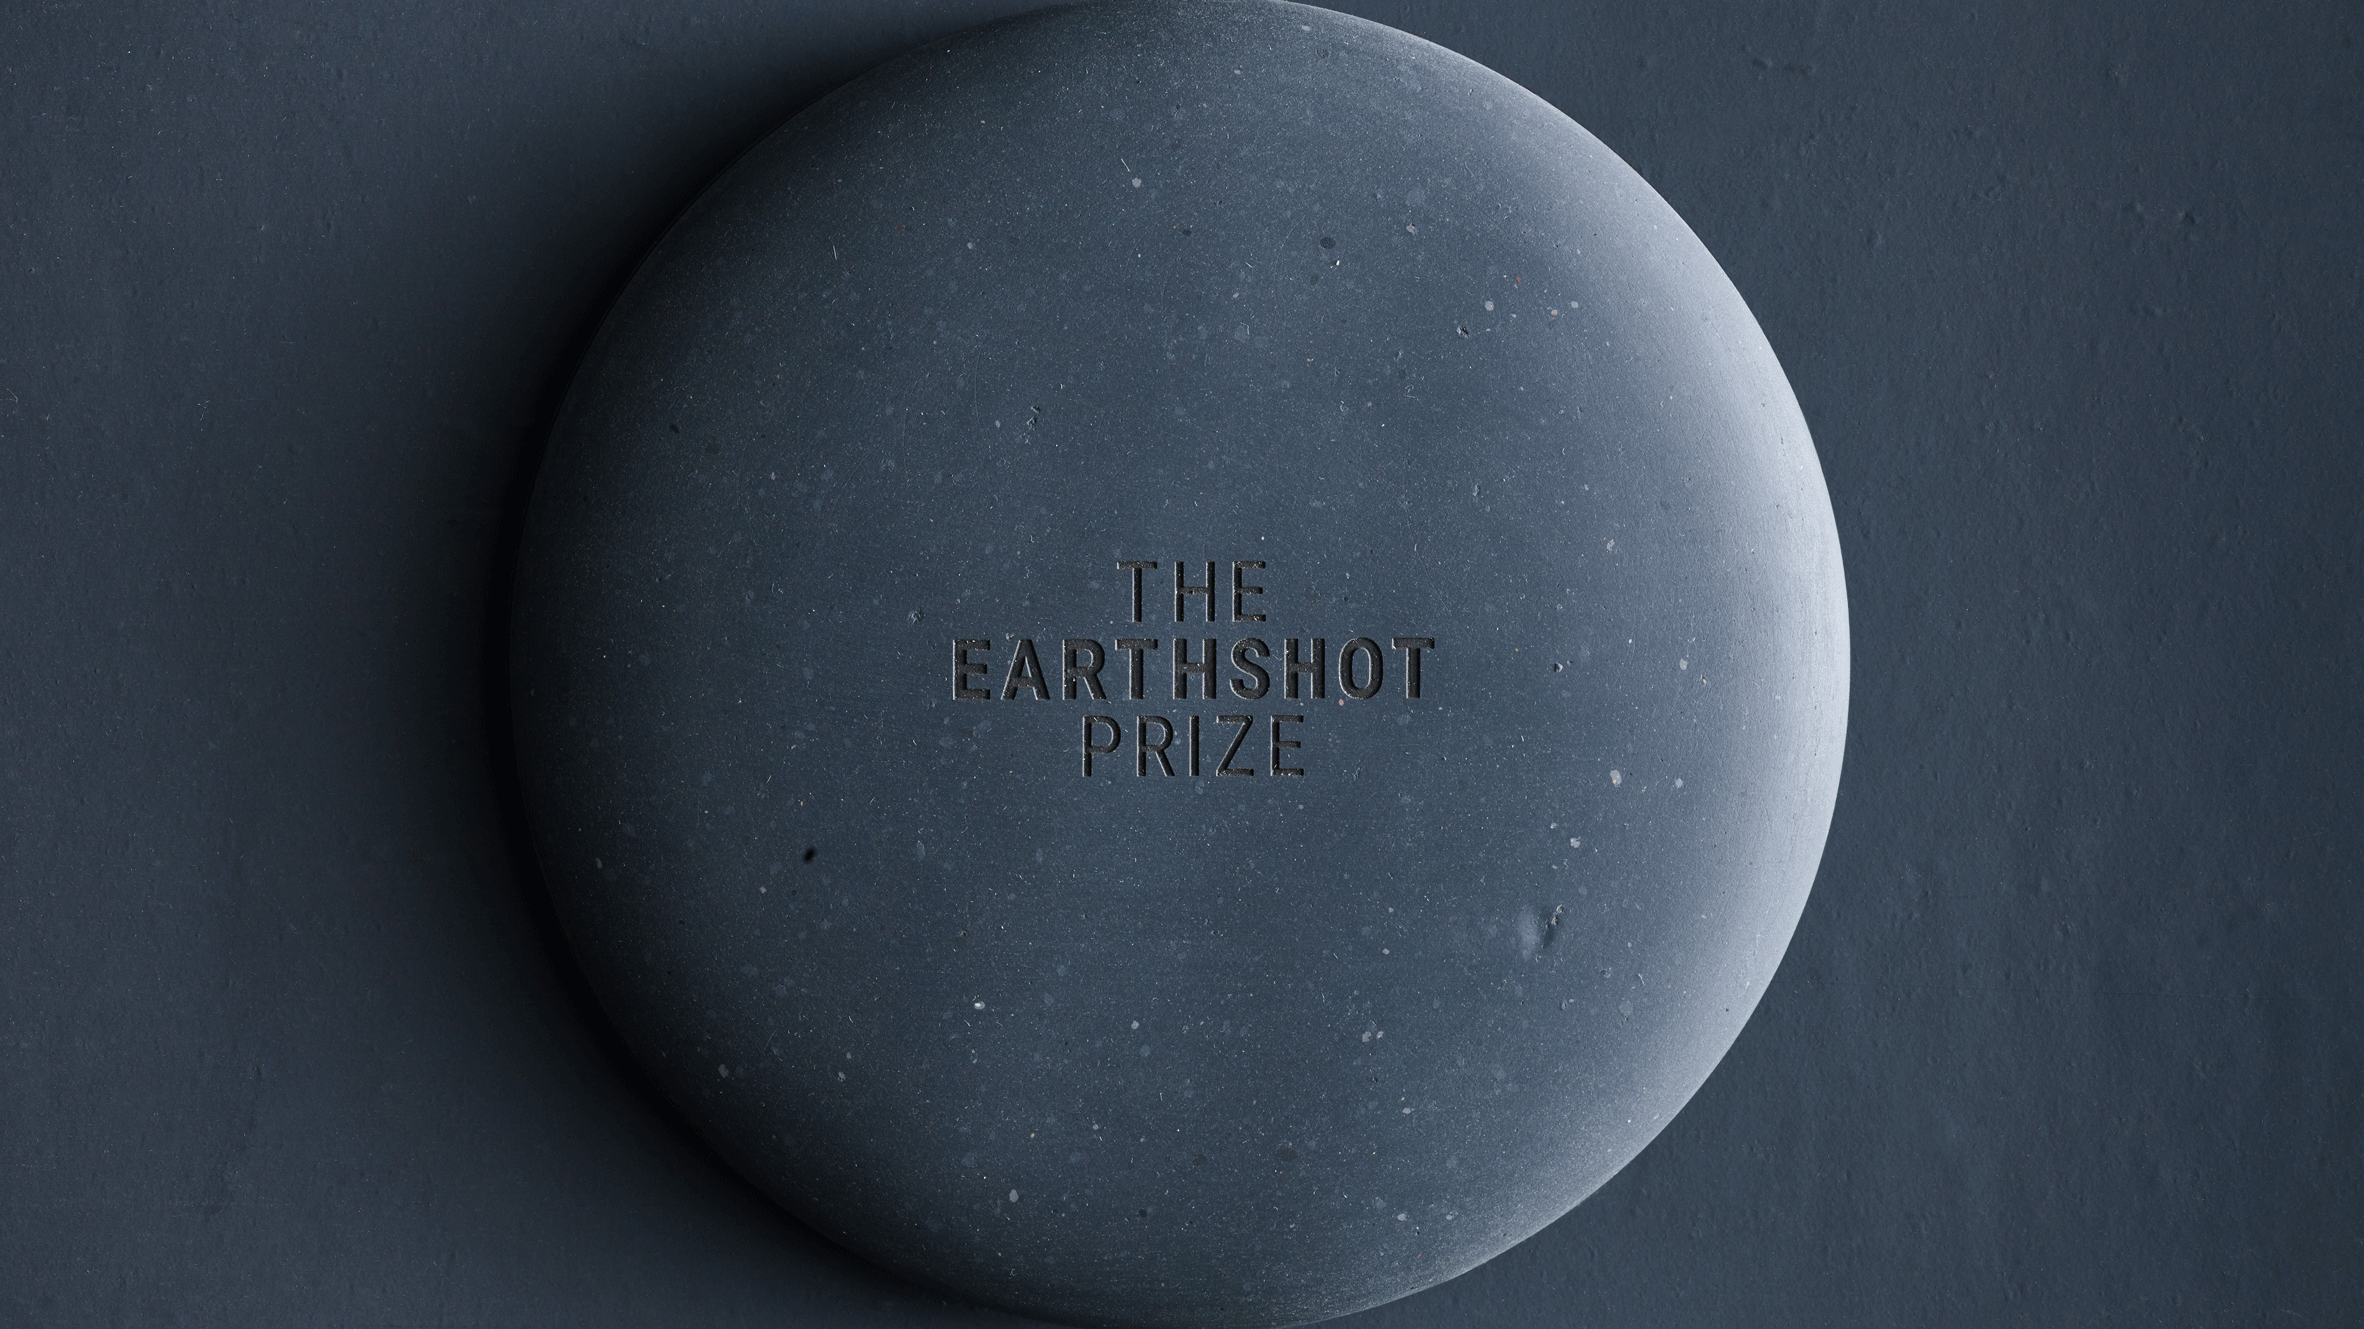 An Earthshot Prize medal design by Christien Meindertsma